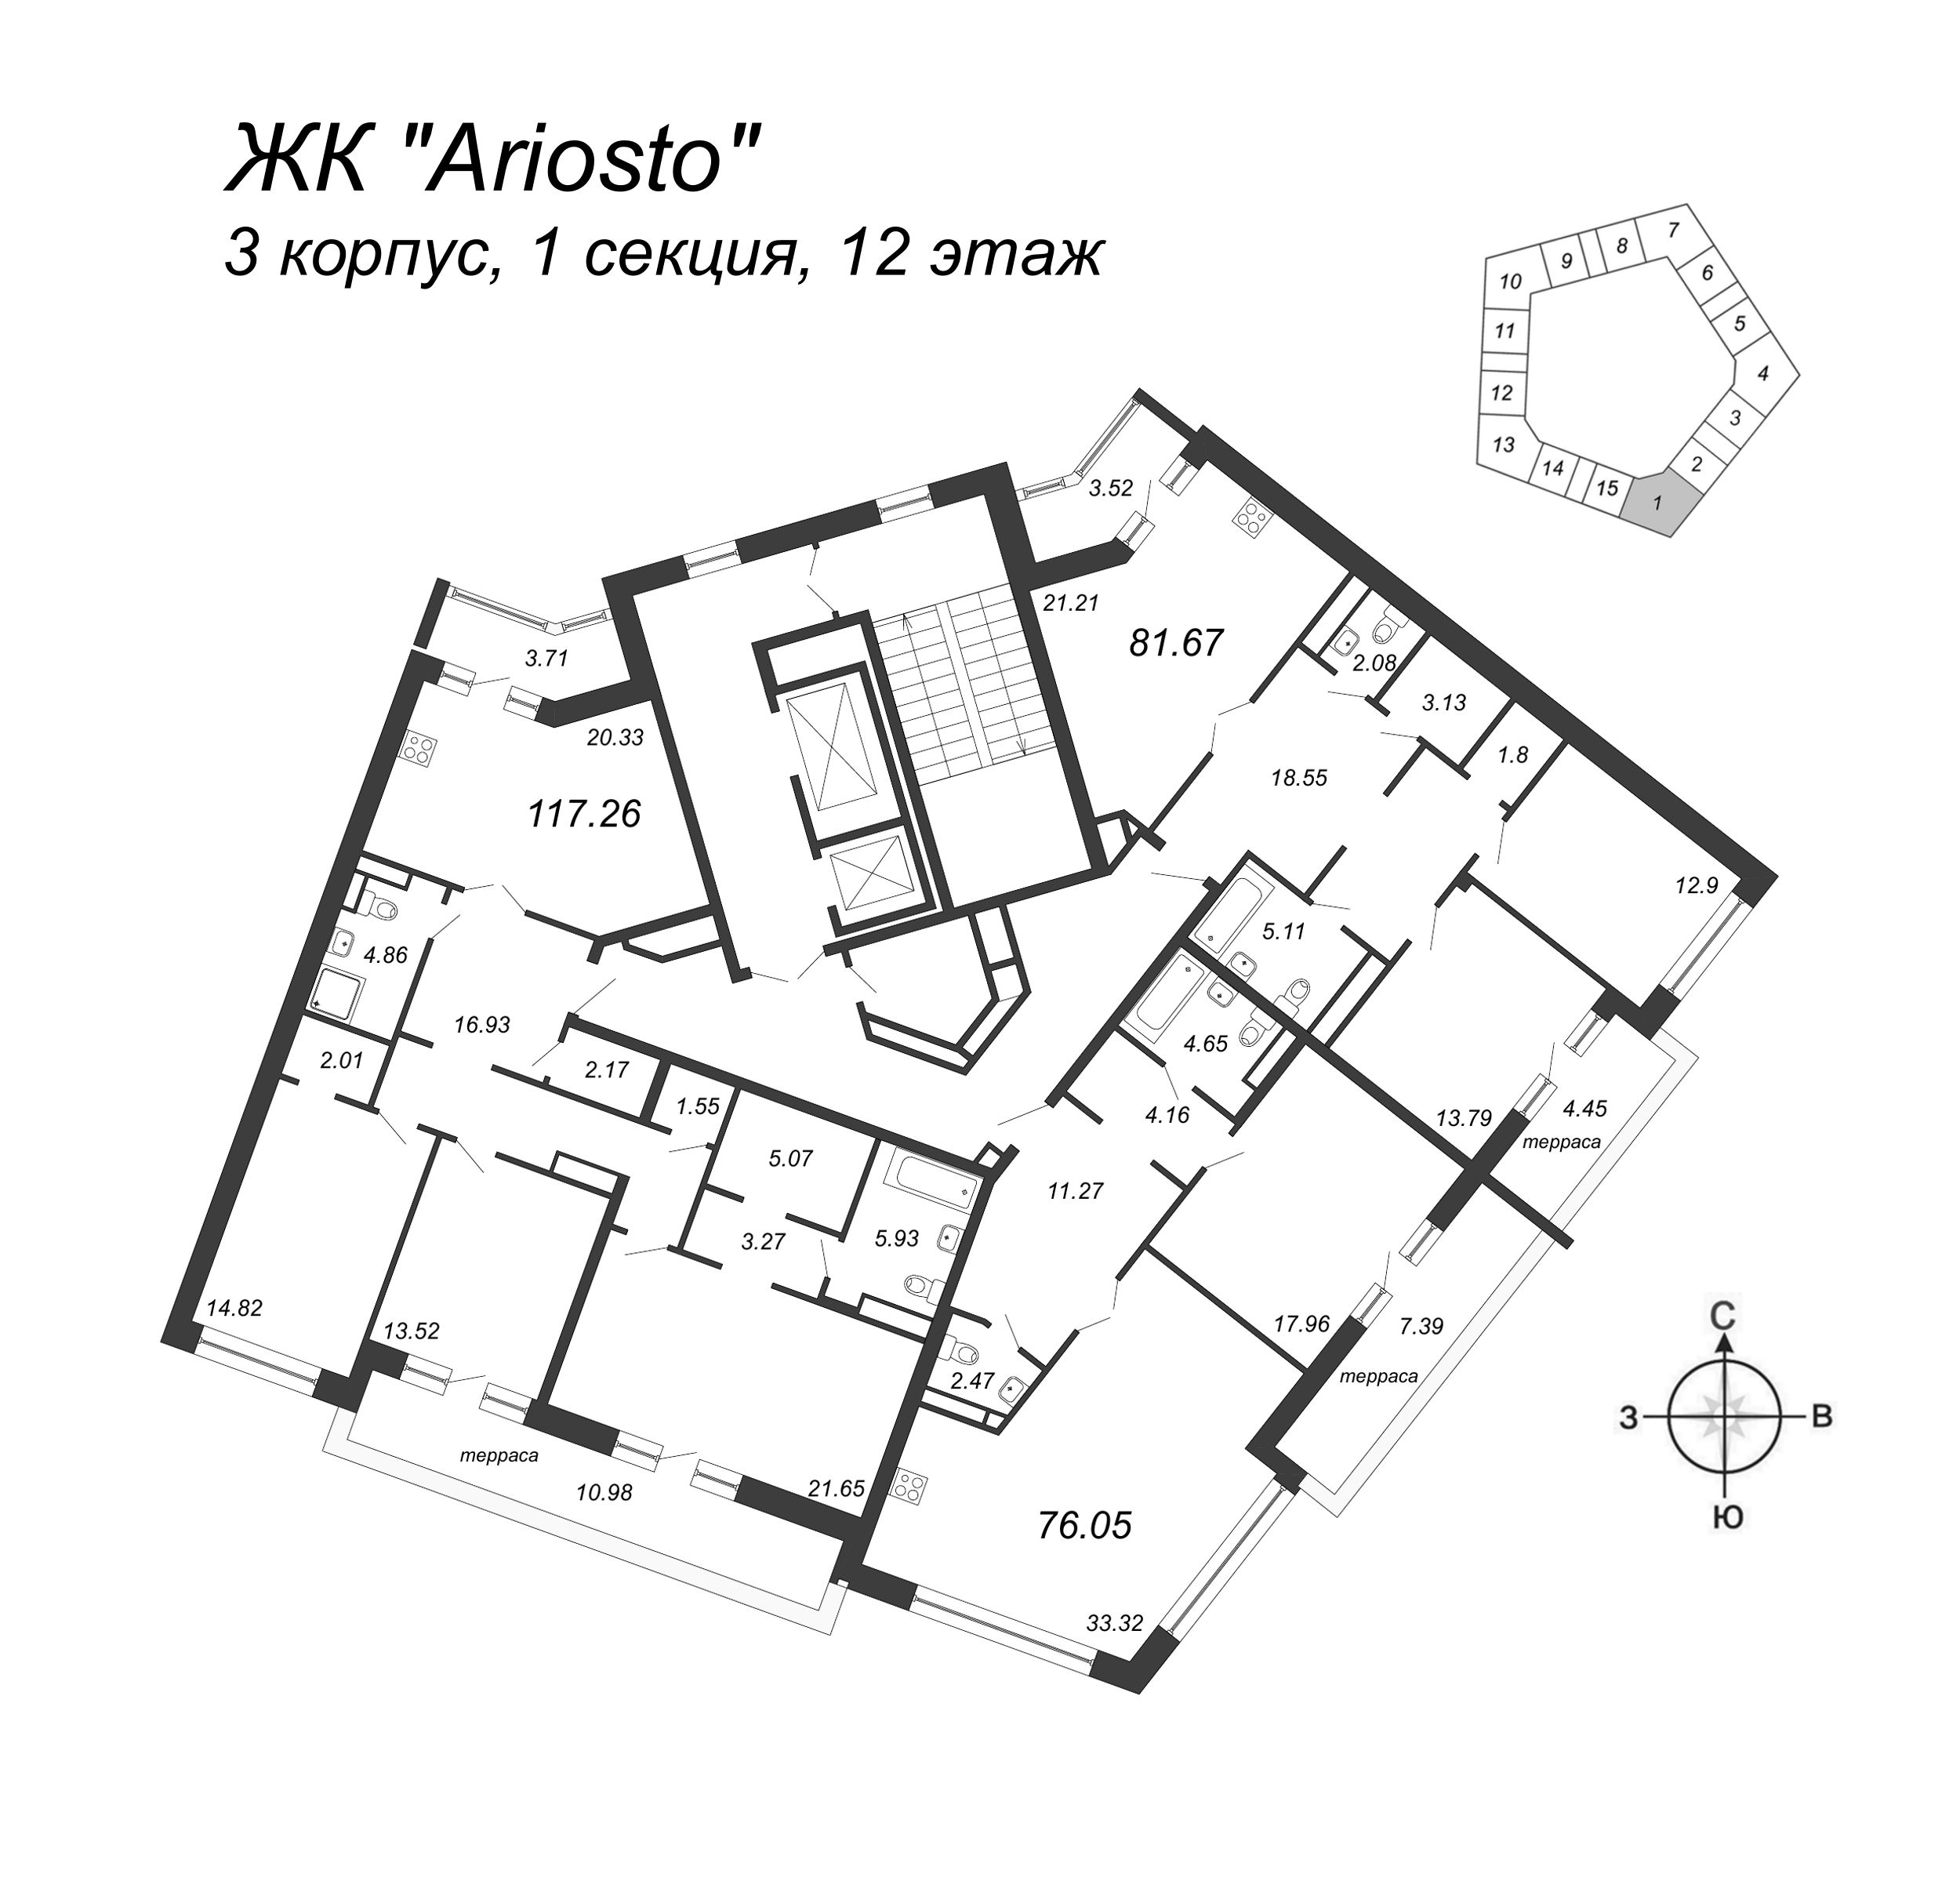 3-комнатная квартира, 117.26 м² в ЖК "Ariosto" - планировка этажа